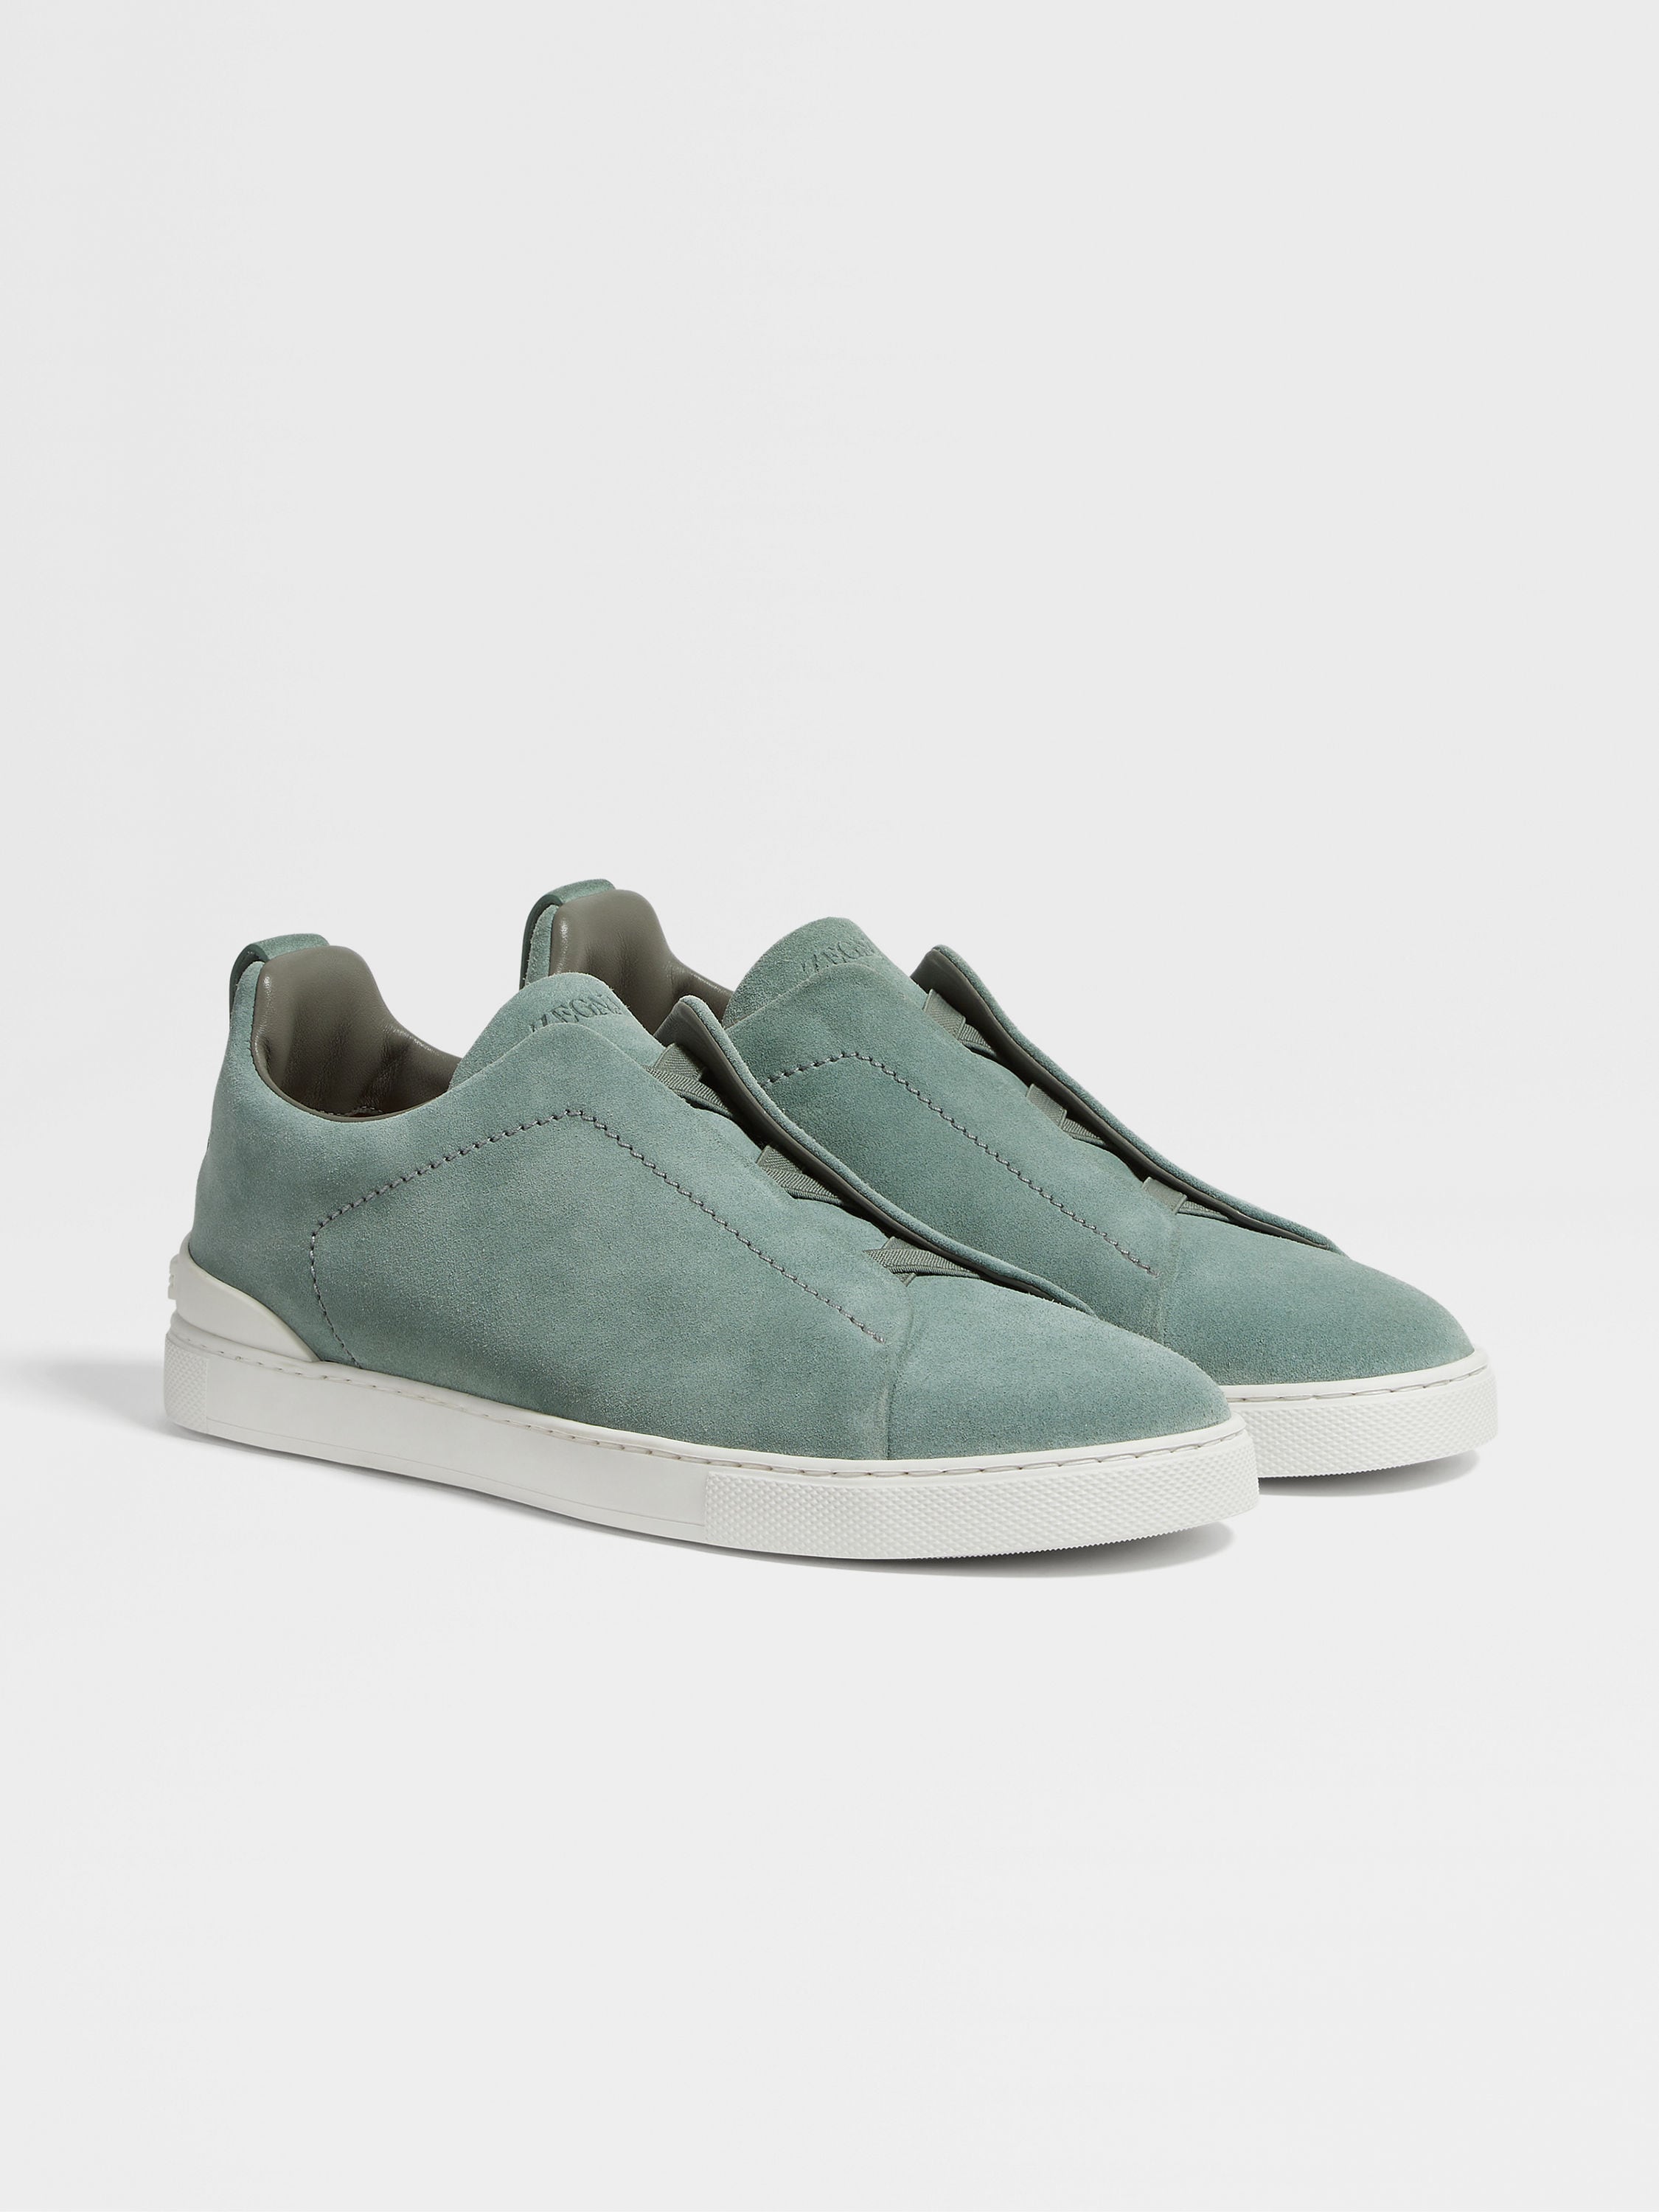 灰绿色麂皮 Triple Stitch™ 奢华休闲鞋